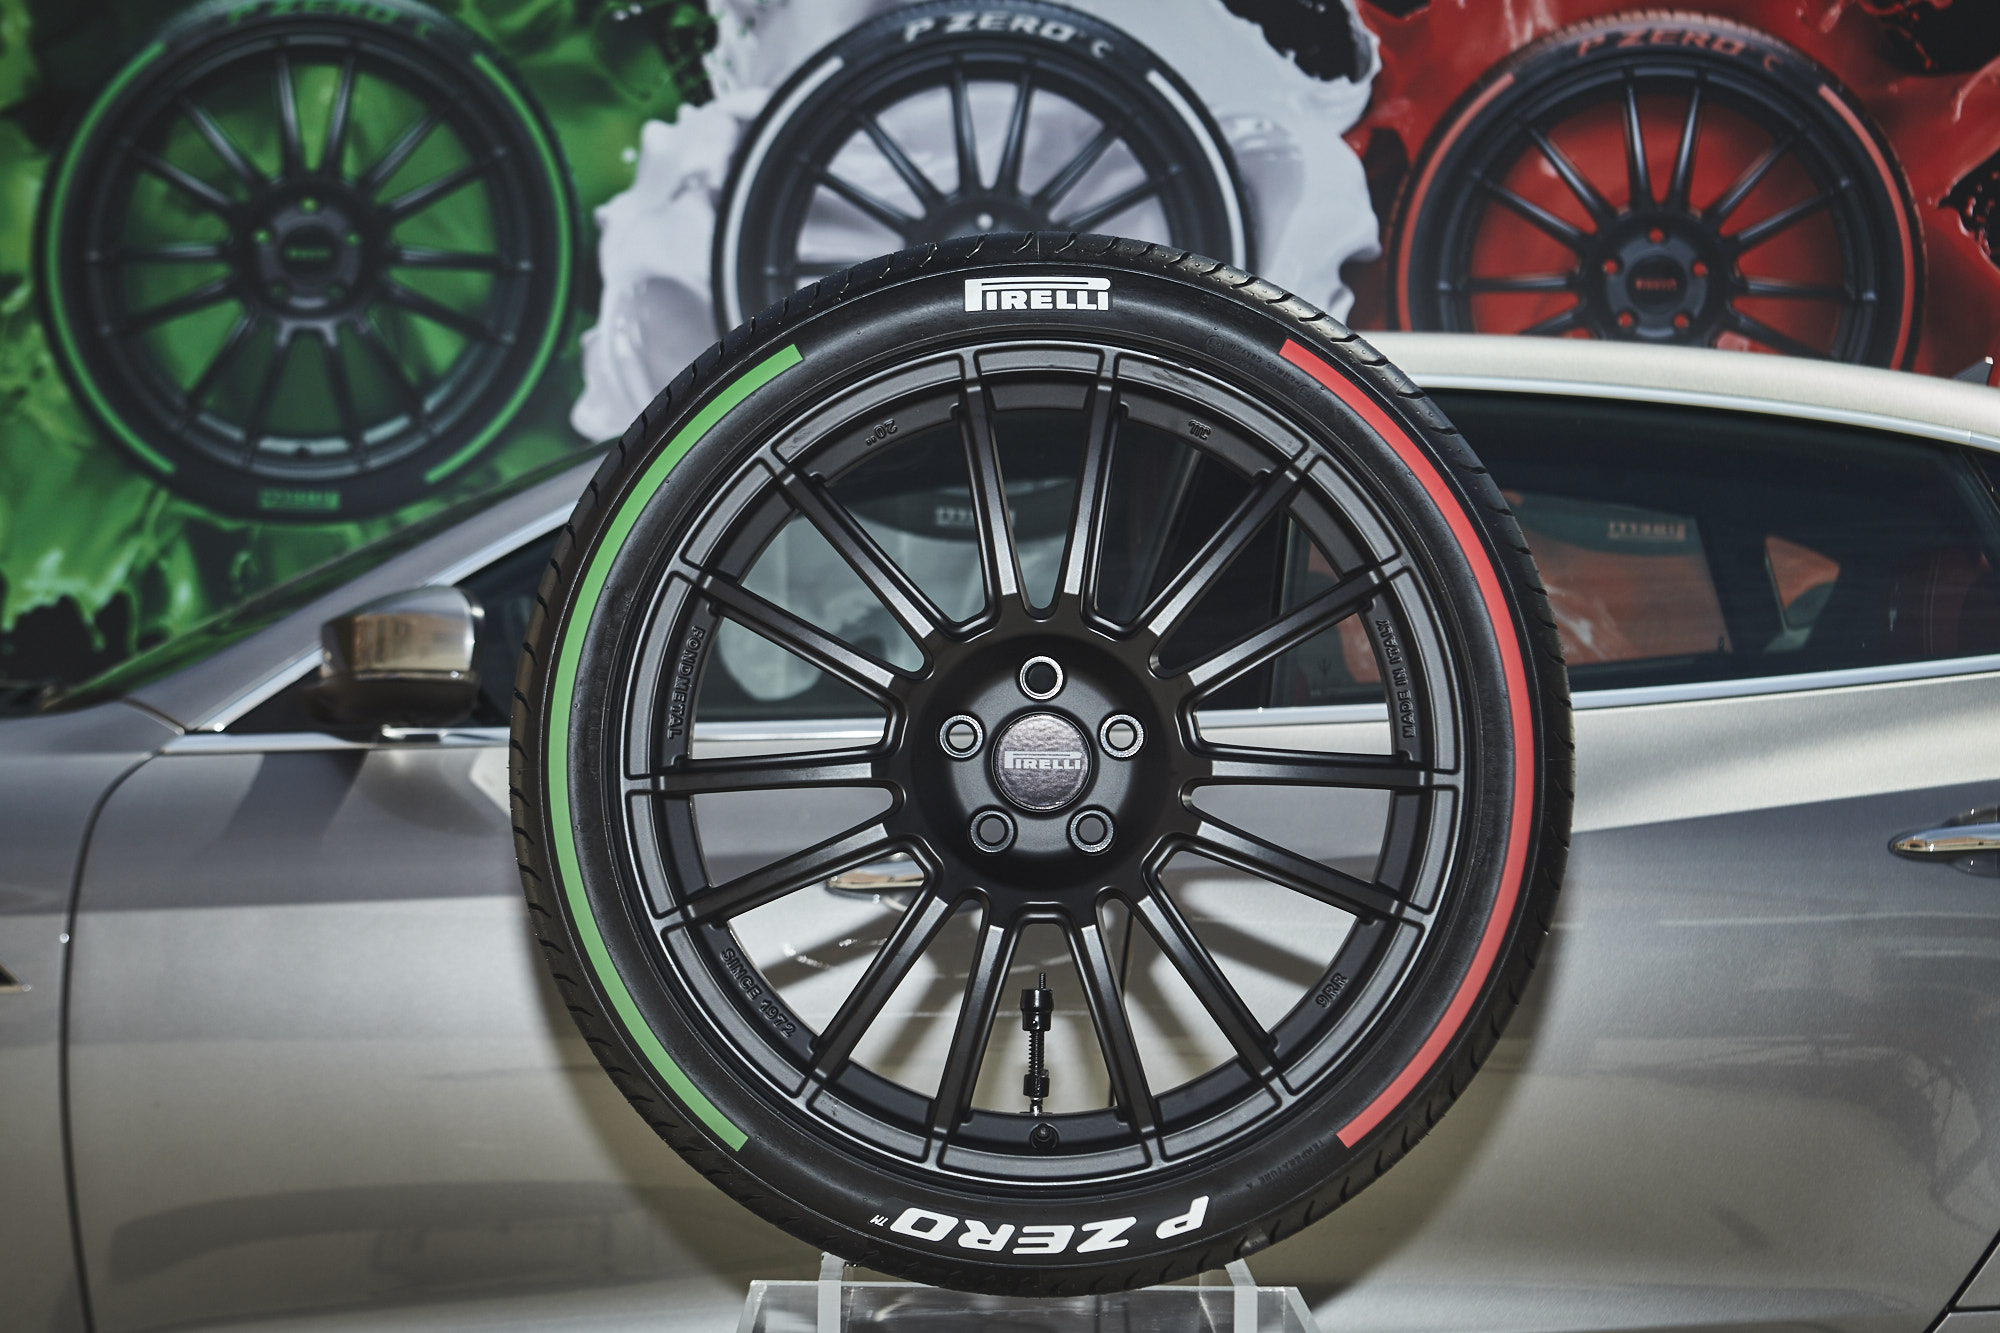 Pirelli pneumatici colorati: l&#8217;edizione speciale dei suoi pneumatici P Zero con i colori della bandiera italiana